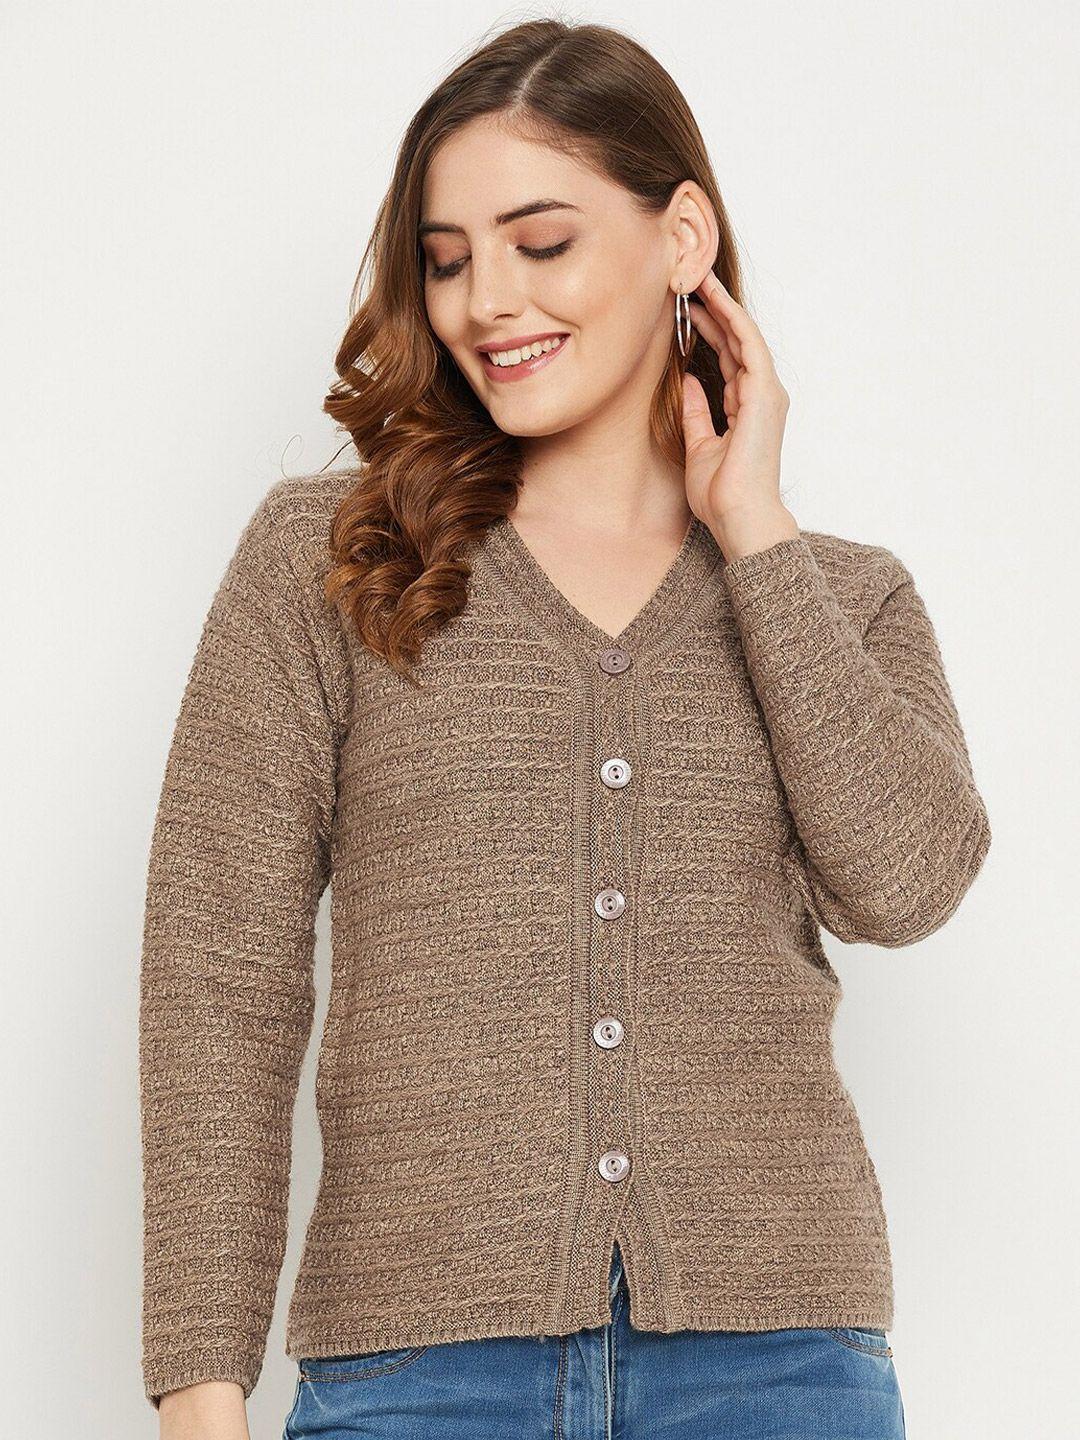 zigo-women-mauve-self-design-cable-knit-wool-cardigan-sweater